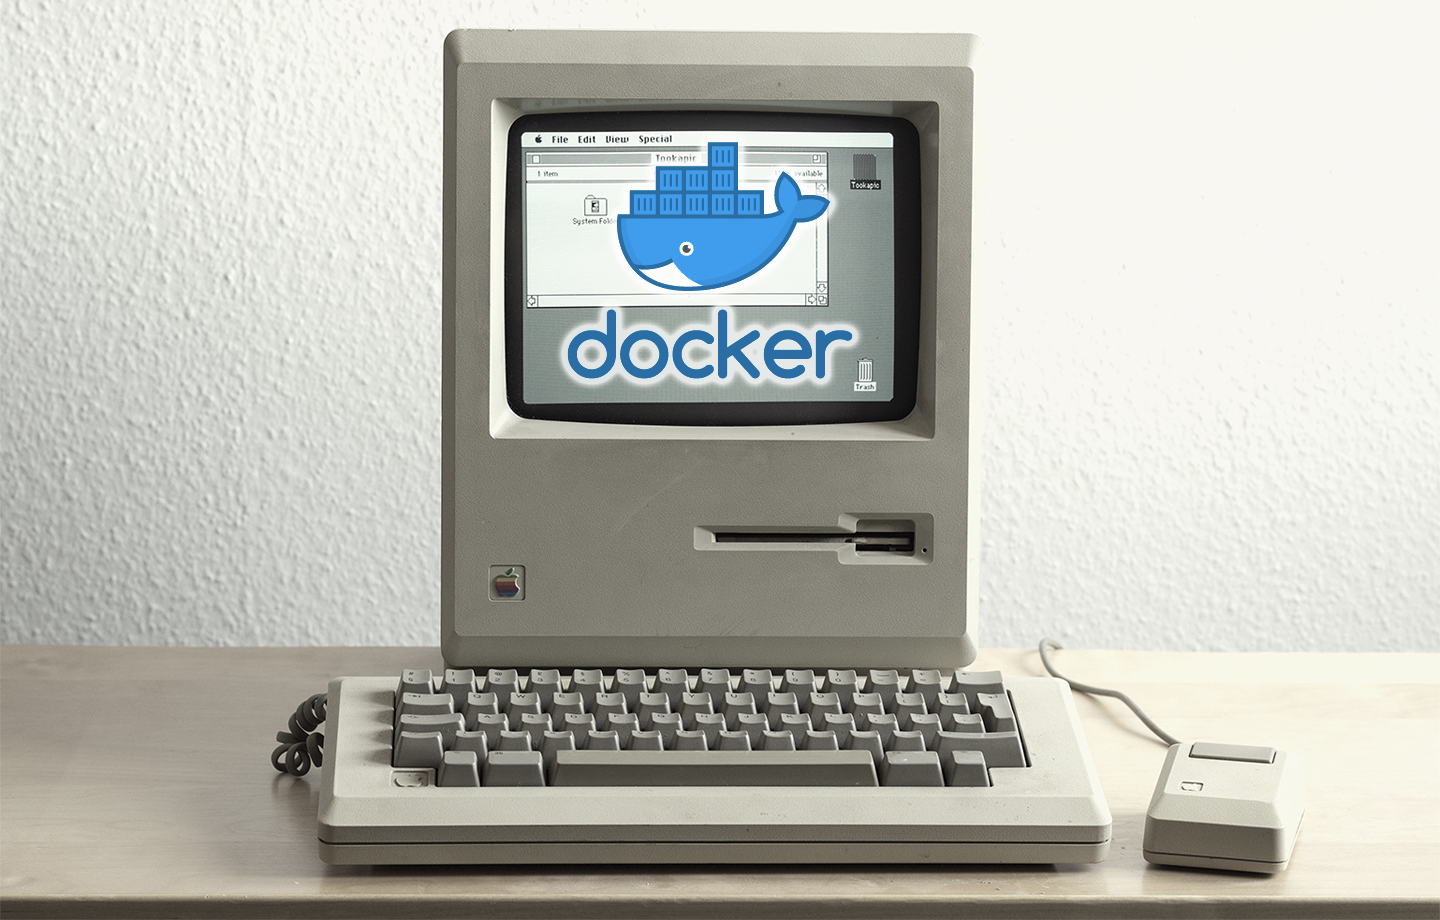 Docker for mac mount volume 1